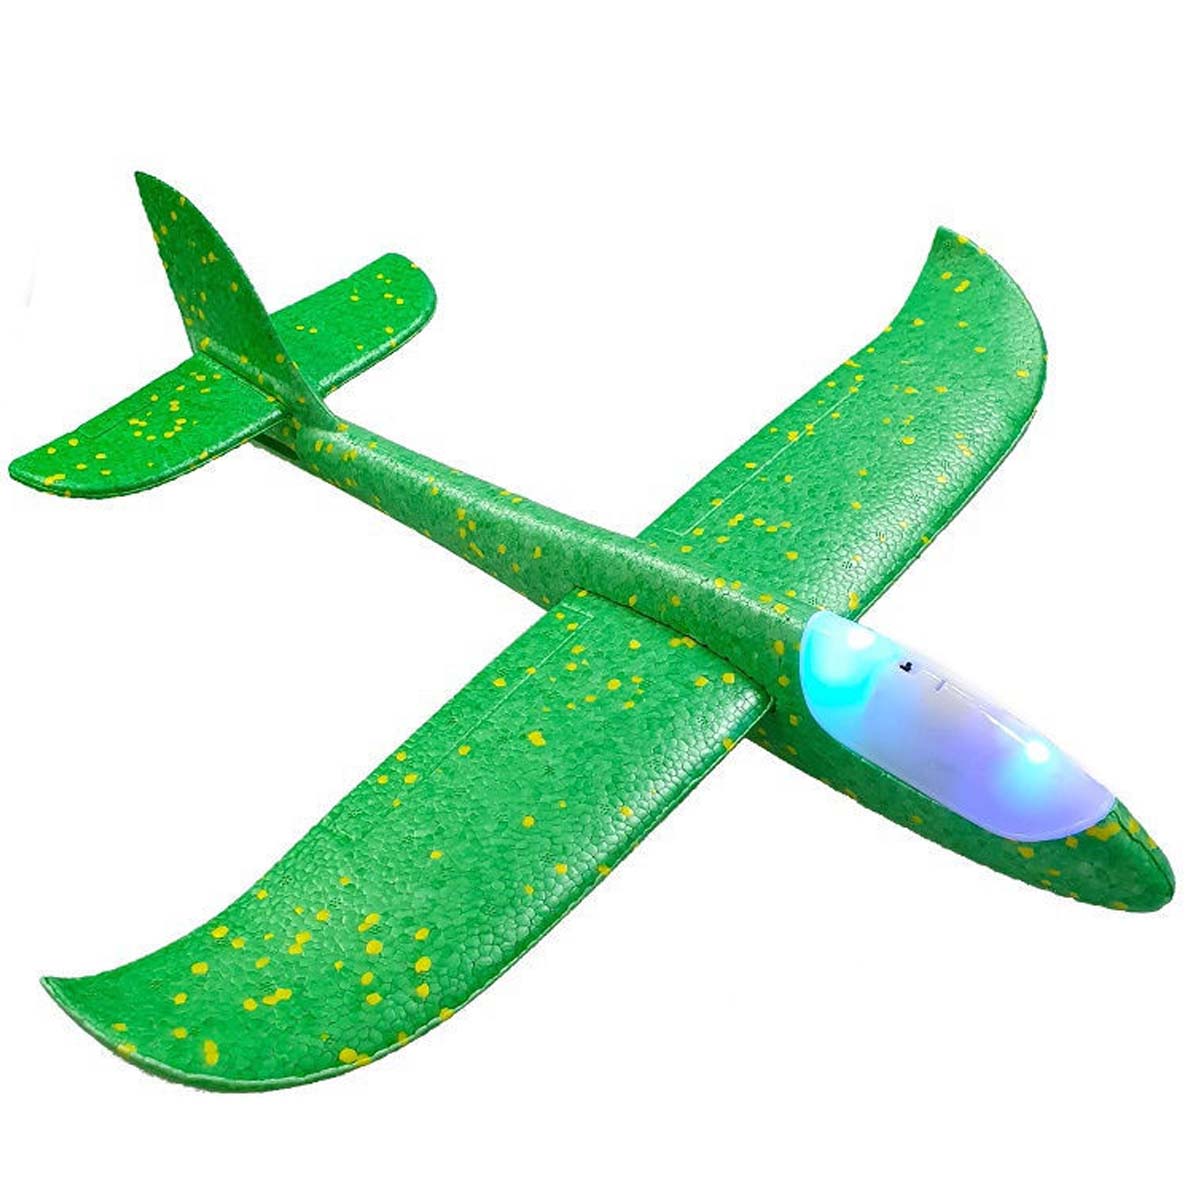 Метательный самолет из пенопласта, 45 см, LED подсветка кабины, цвет зеленый